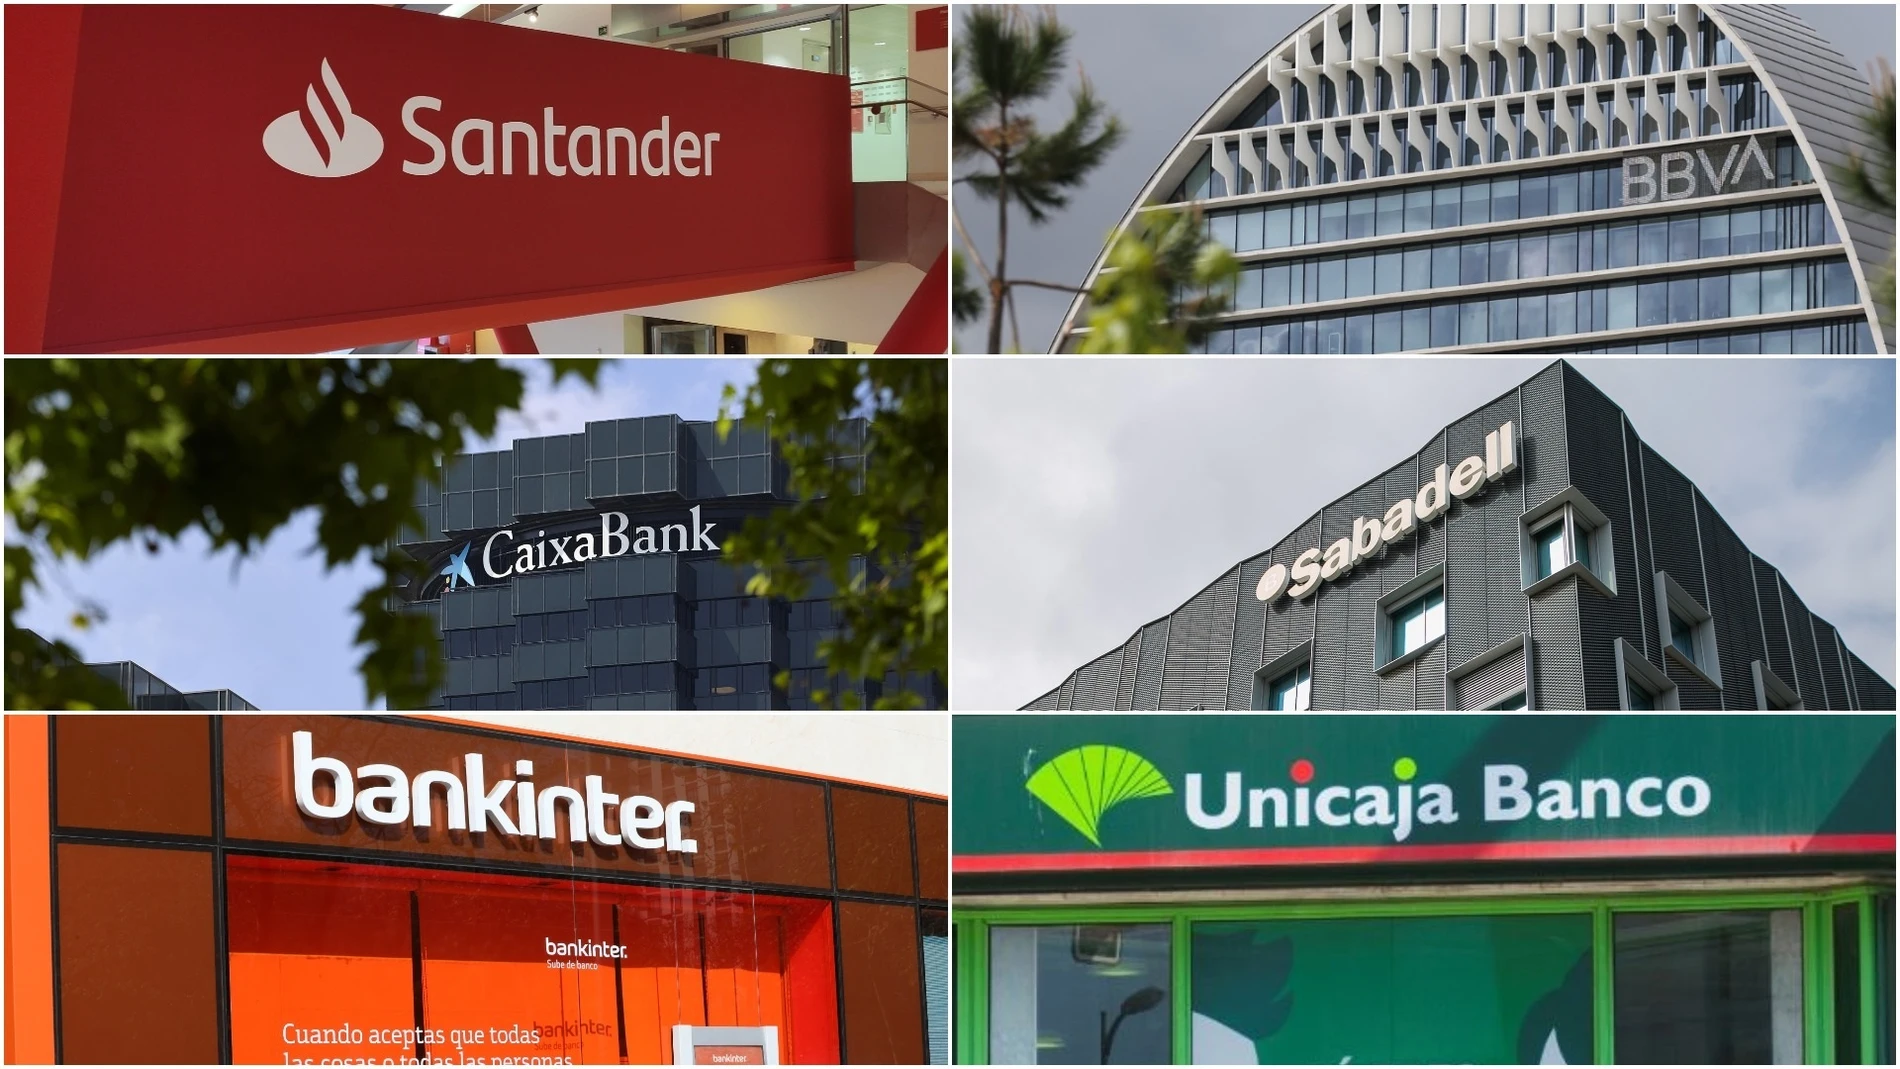 Economía/Finanzas.- Scope estima que los bancos españoles han tocado techo en rentabilidad en 2023